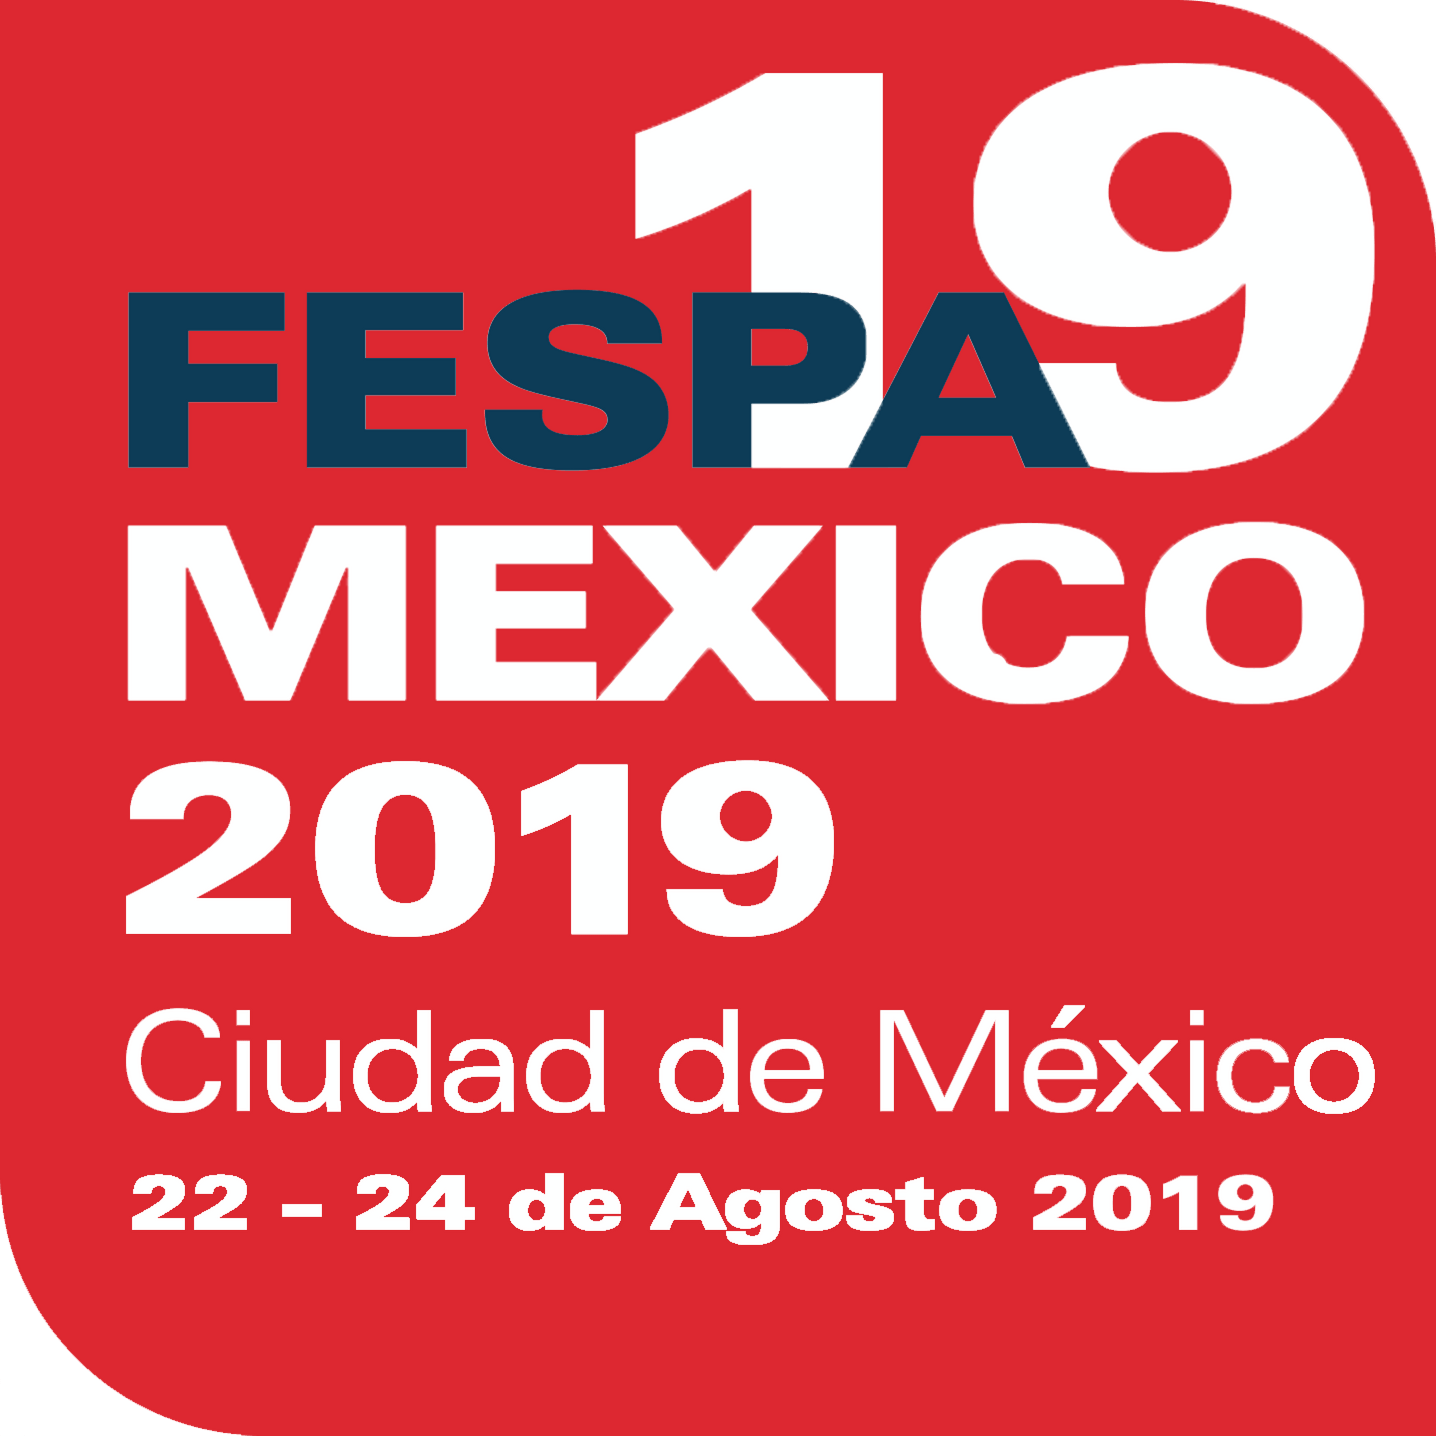 FESPA Mexico logo